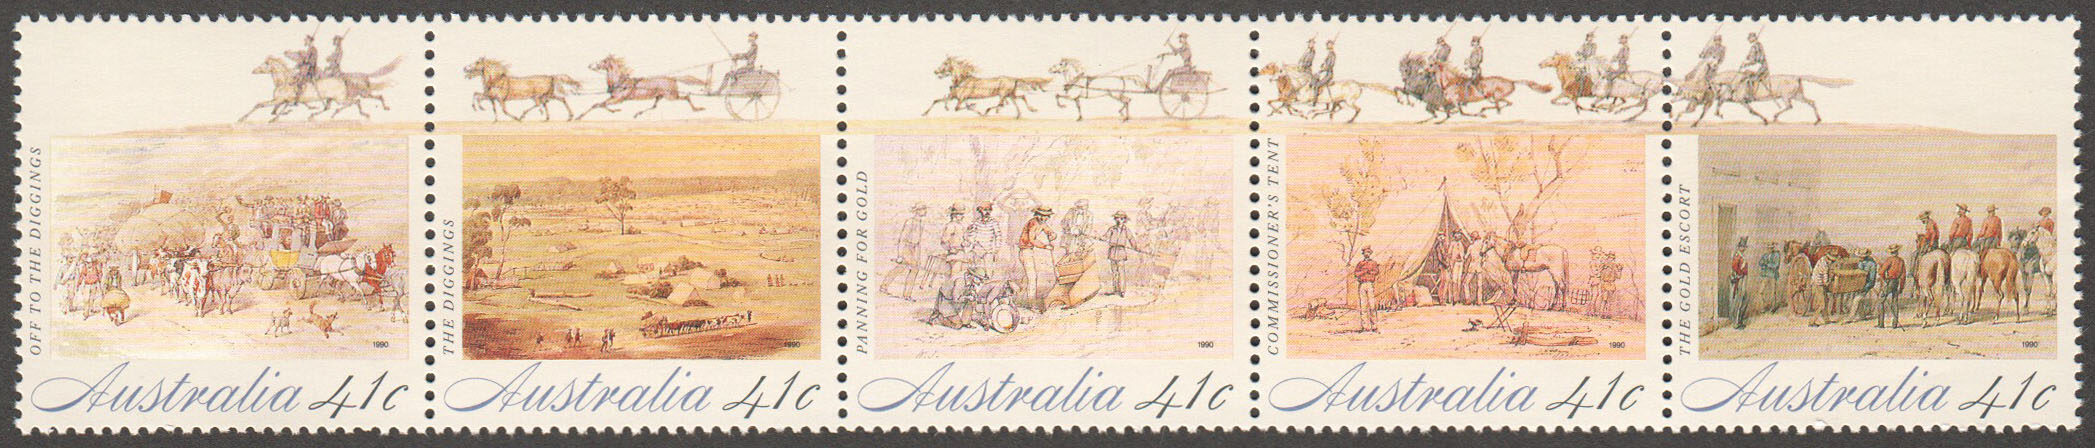 Australia Scott 1181 MNH (A2-15)